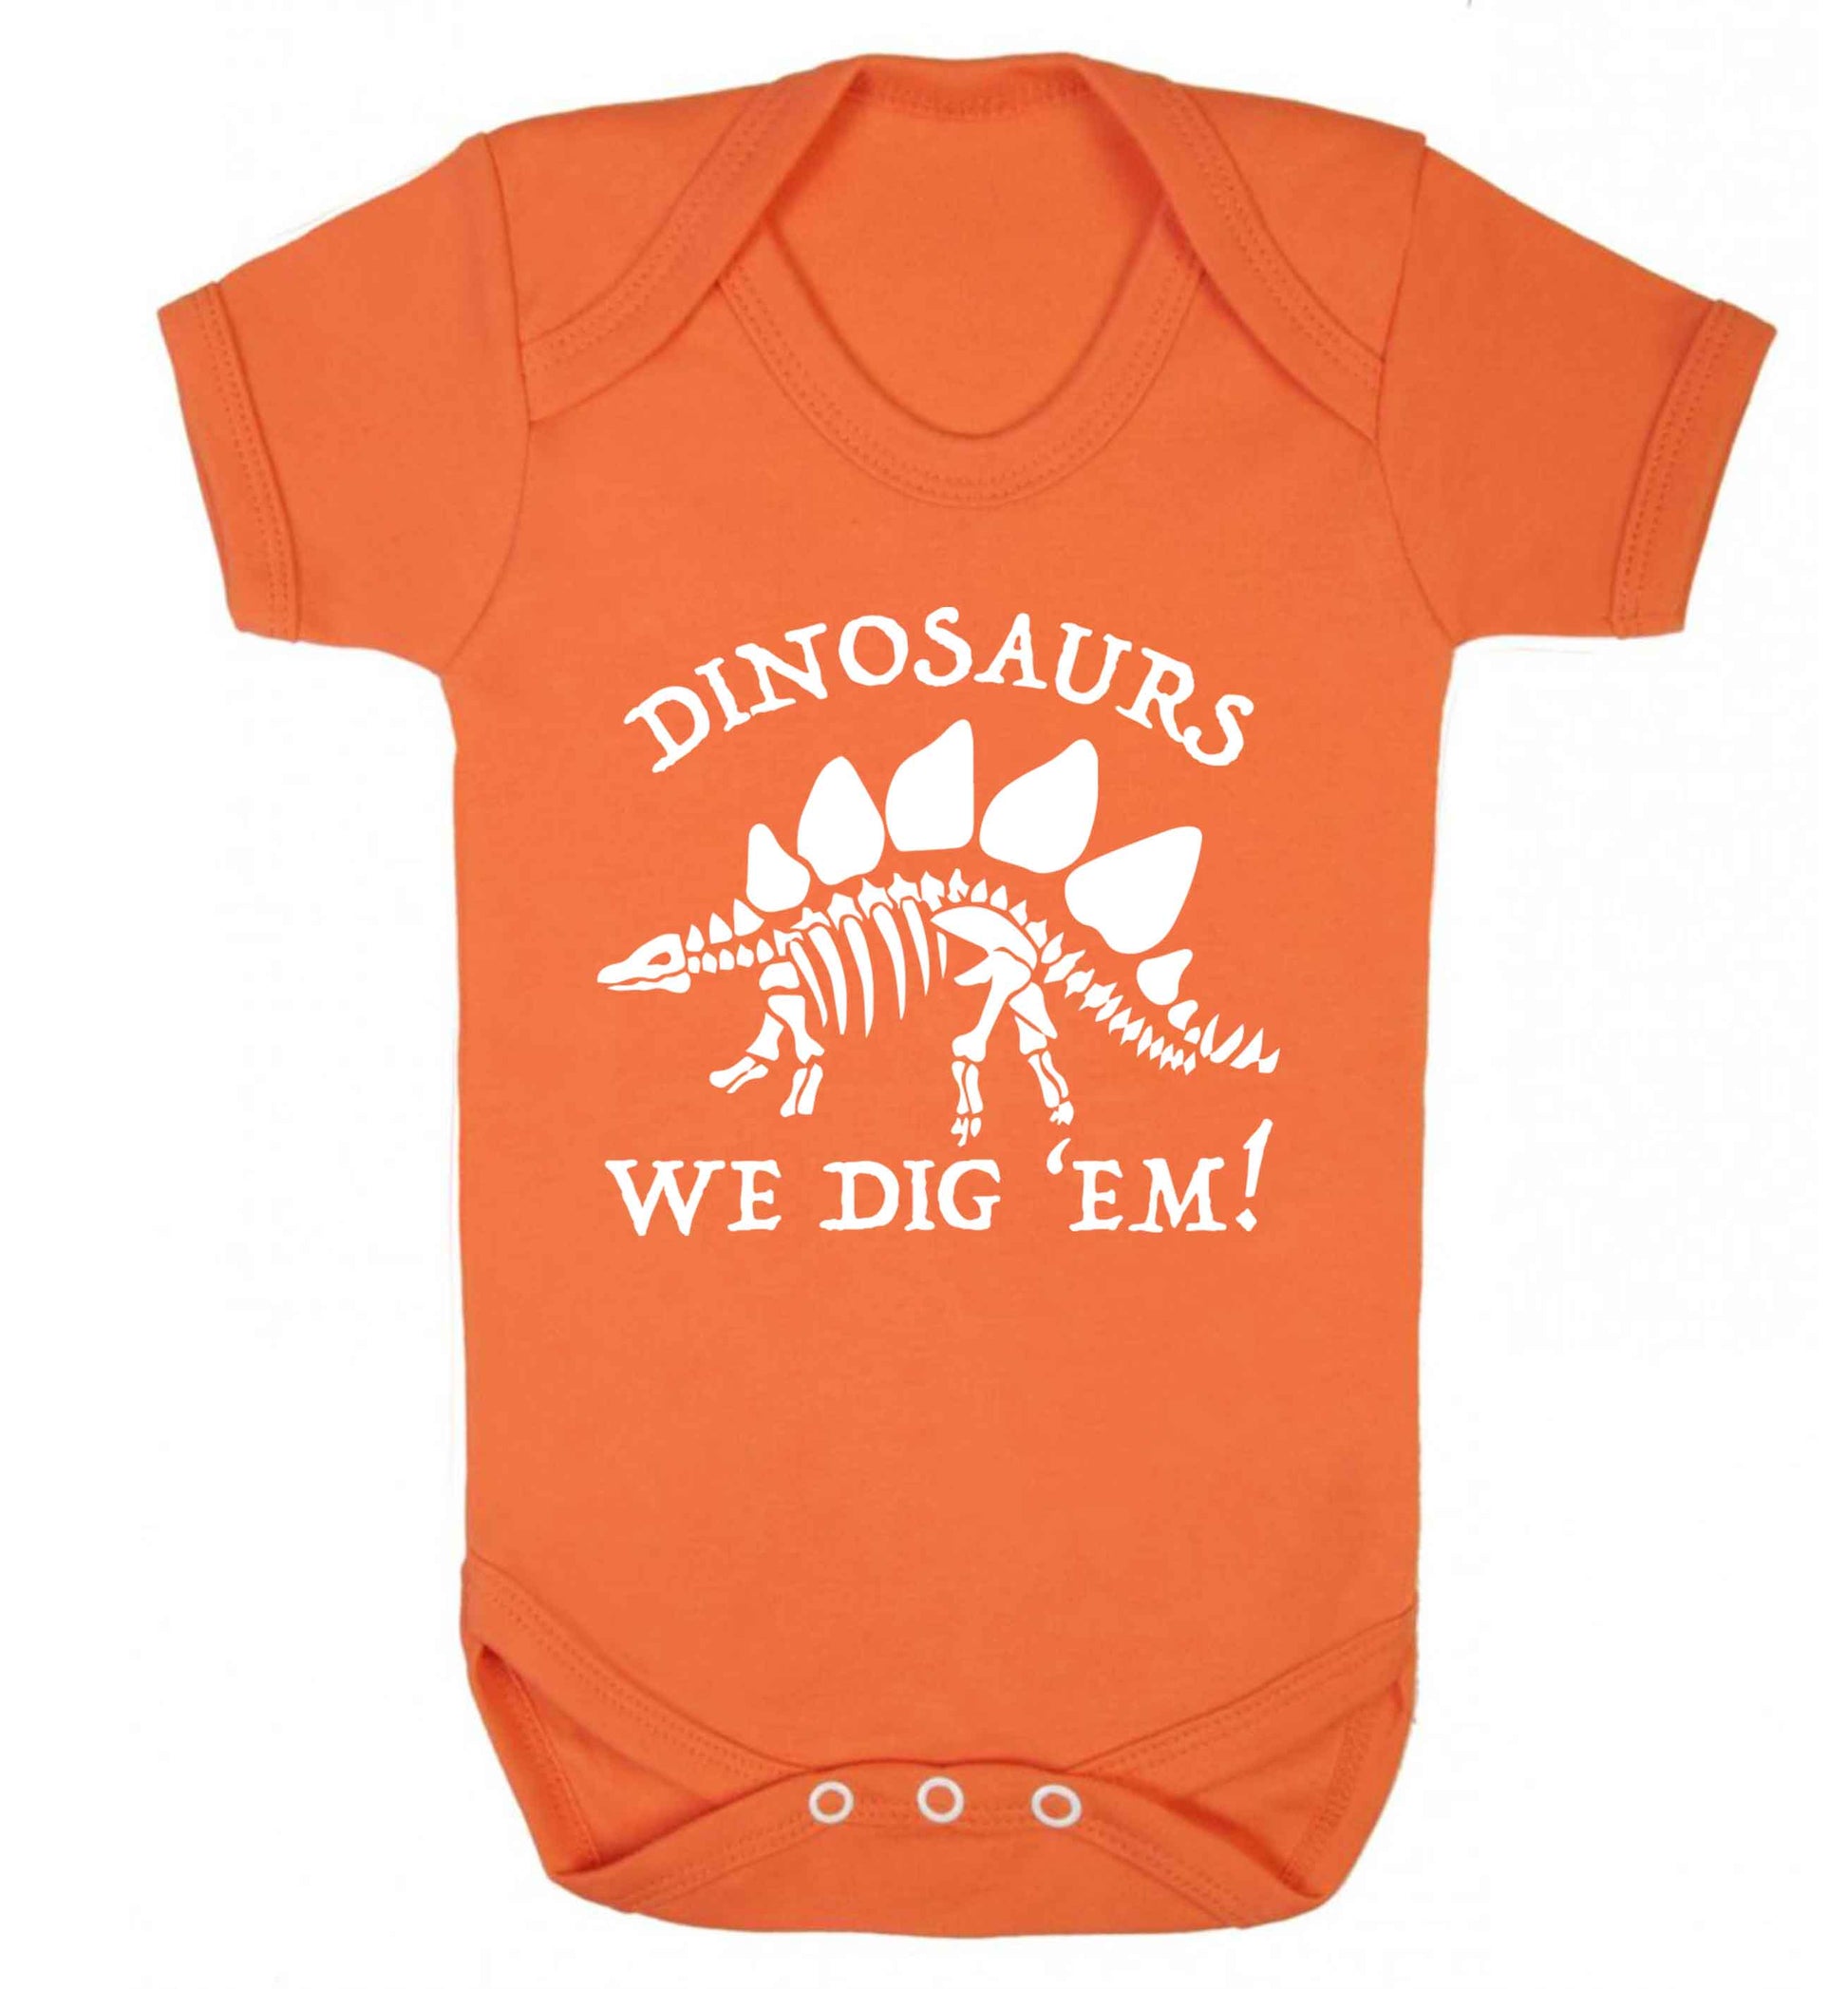 Dinosaurs we dig 'em! Baby Vest orange 18-24 months